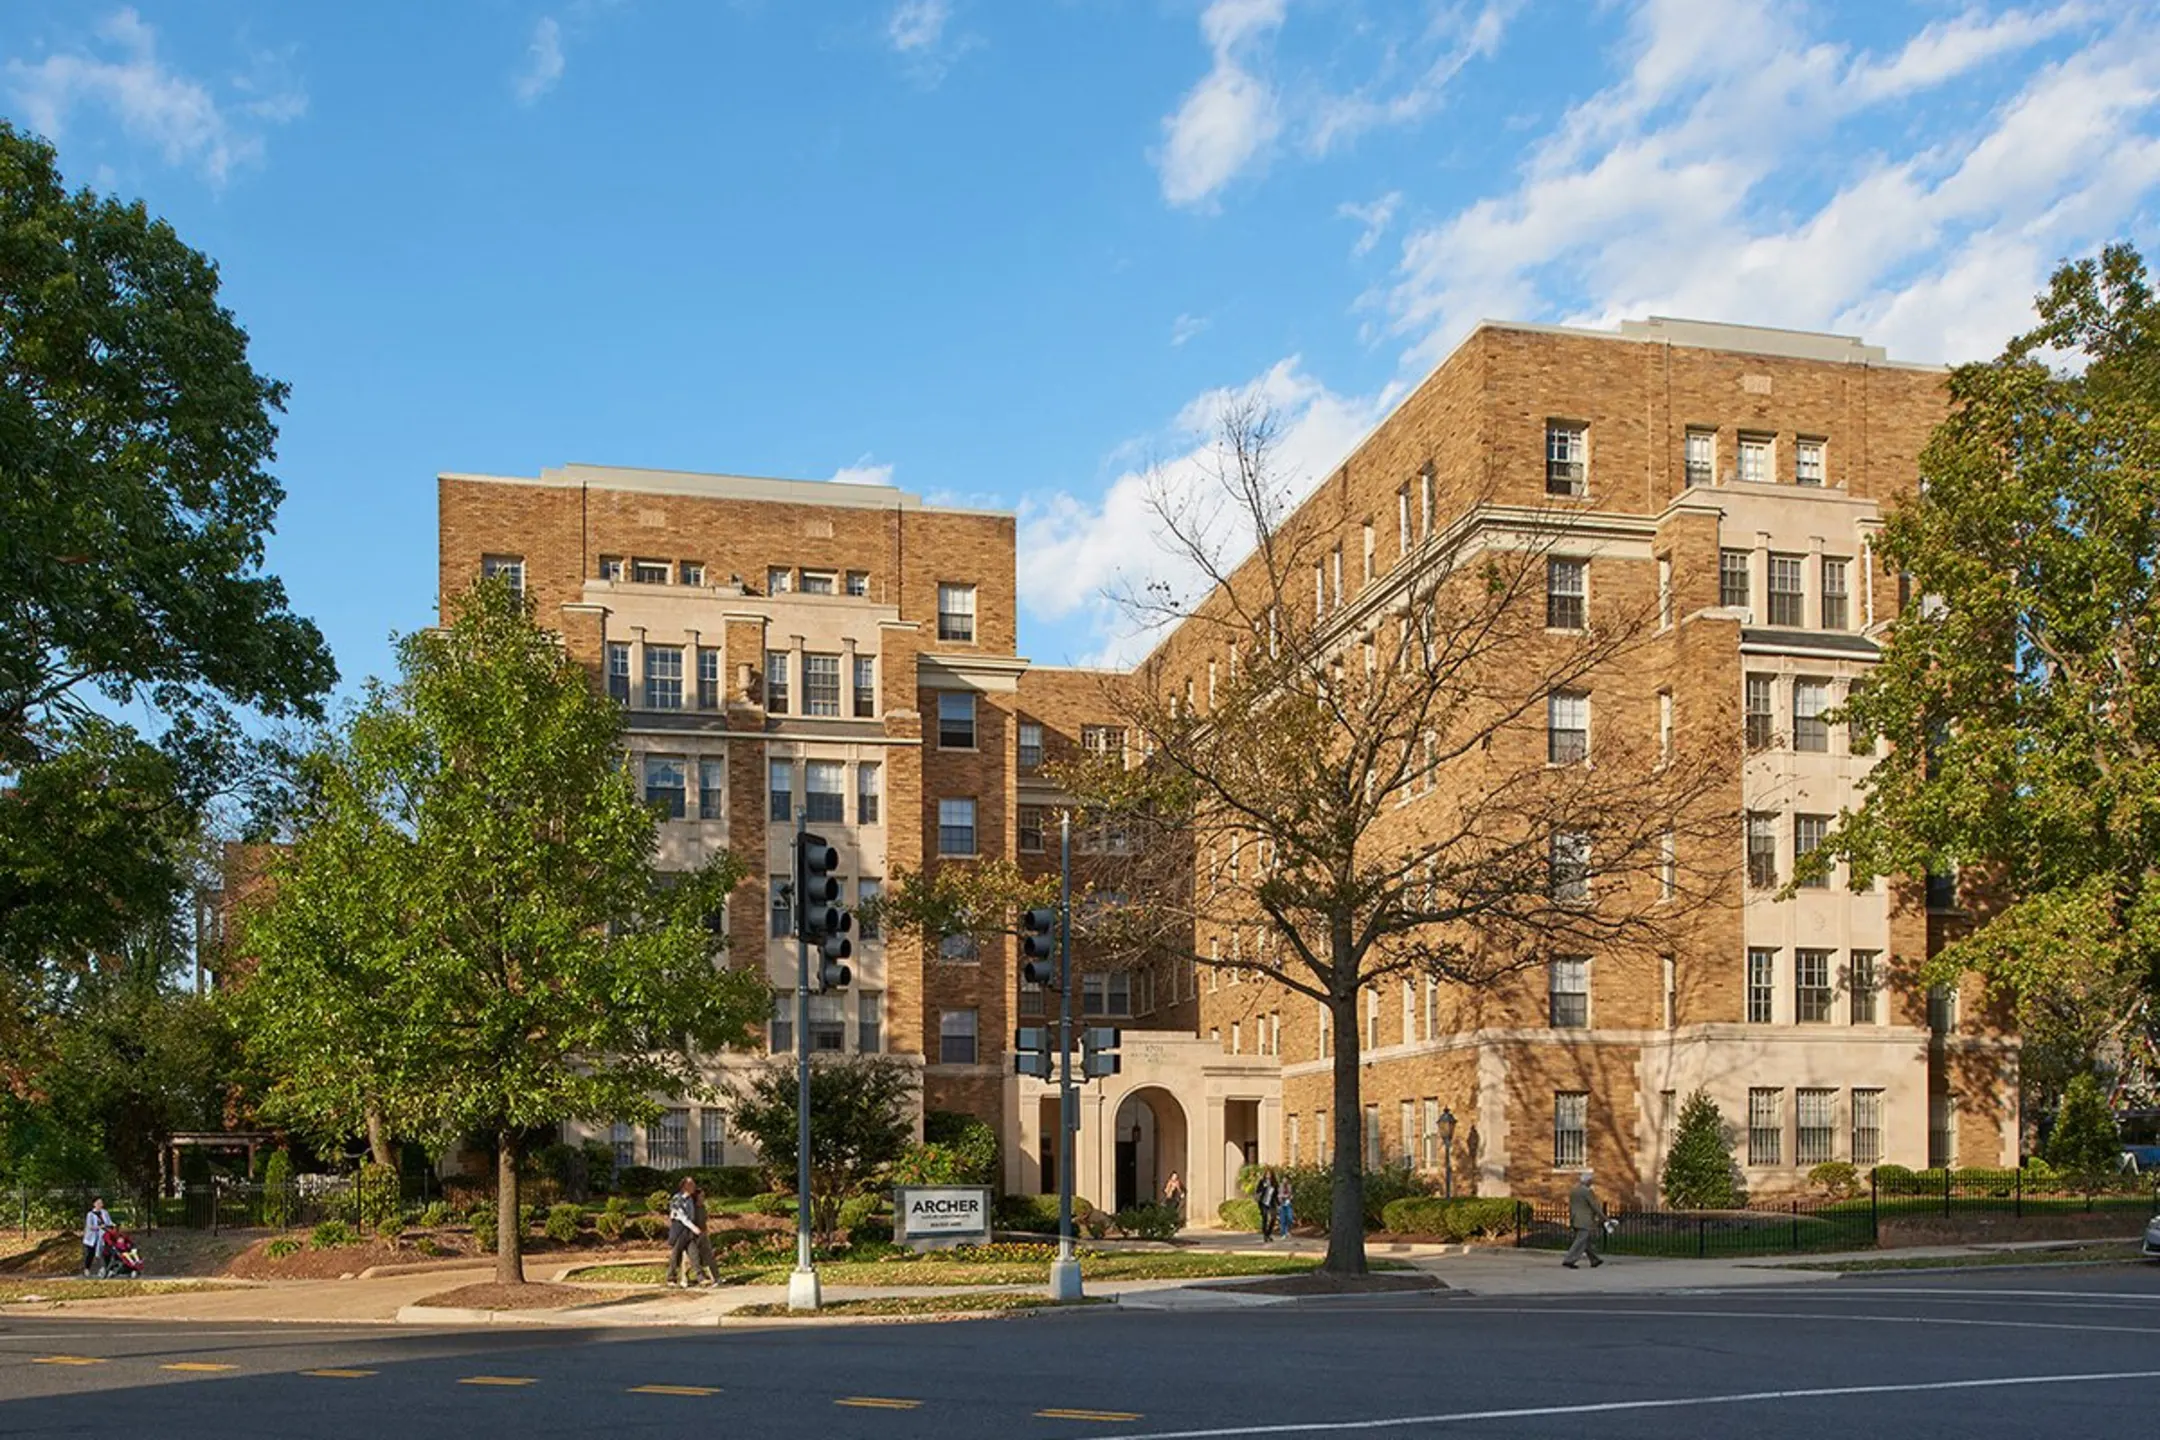 Building - The Archer Apartments - Washington, DC